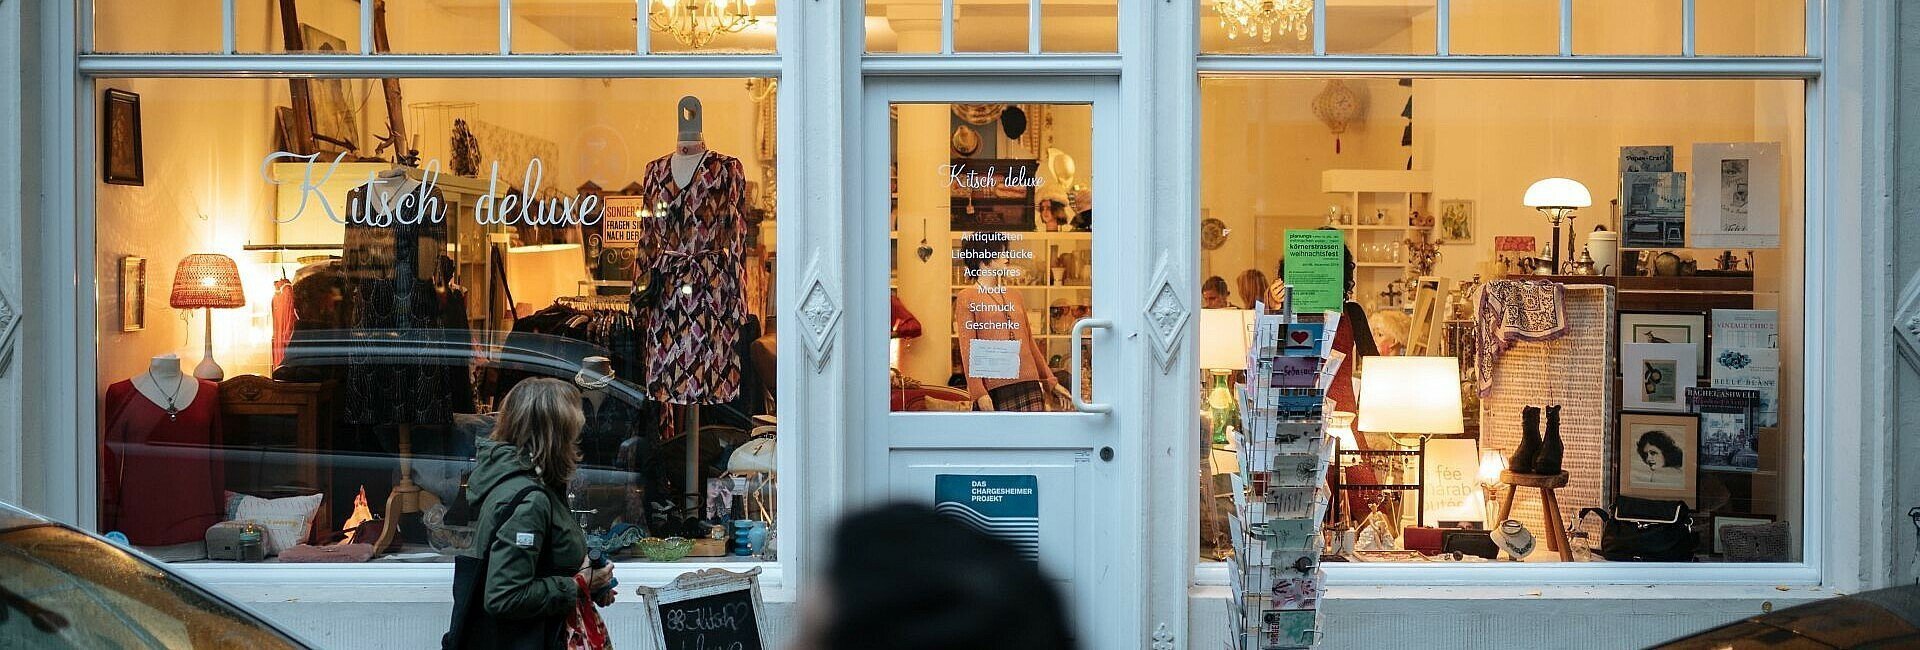 Von außen betrachtet: Der Laden „Kitsch deluxe“ in Ehrenfeld